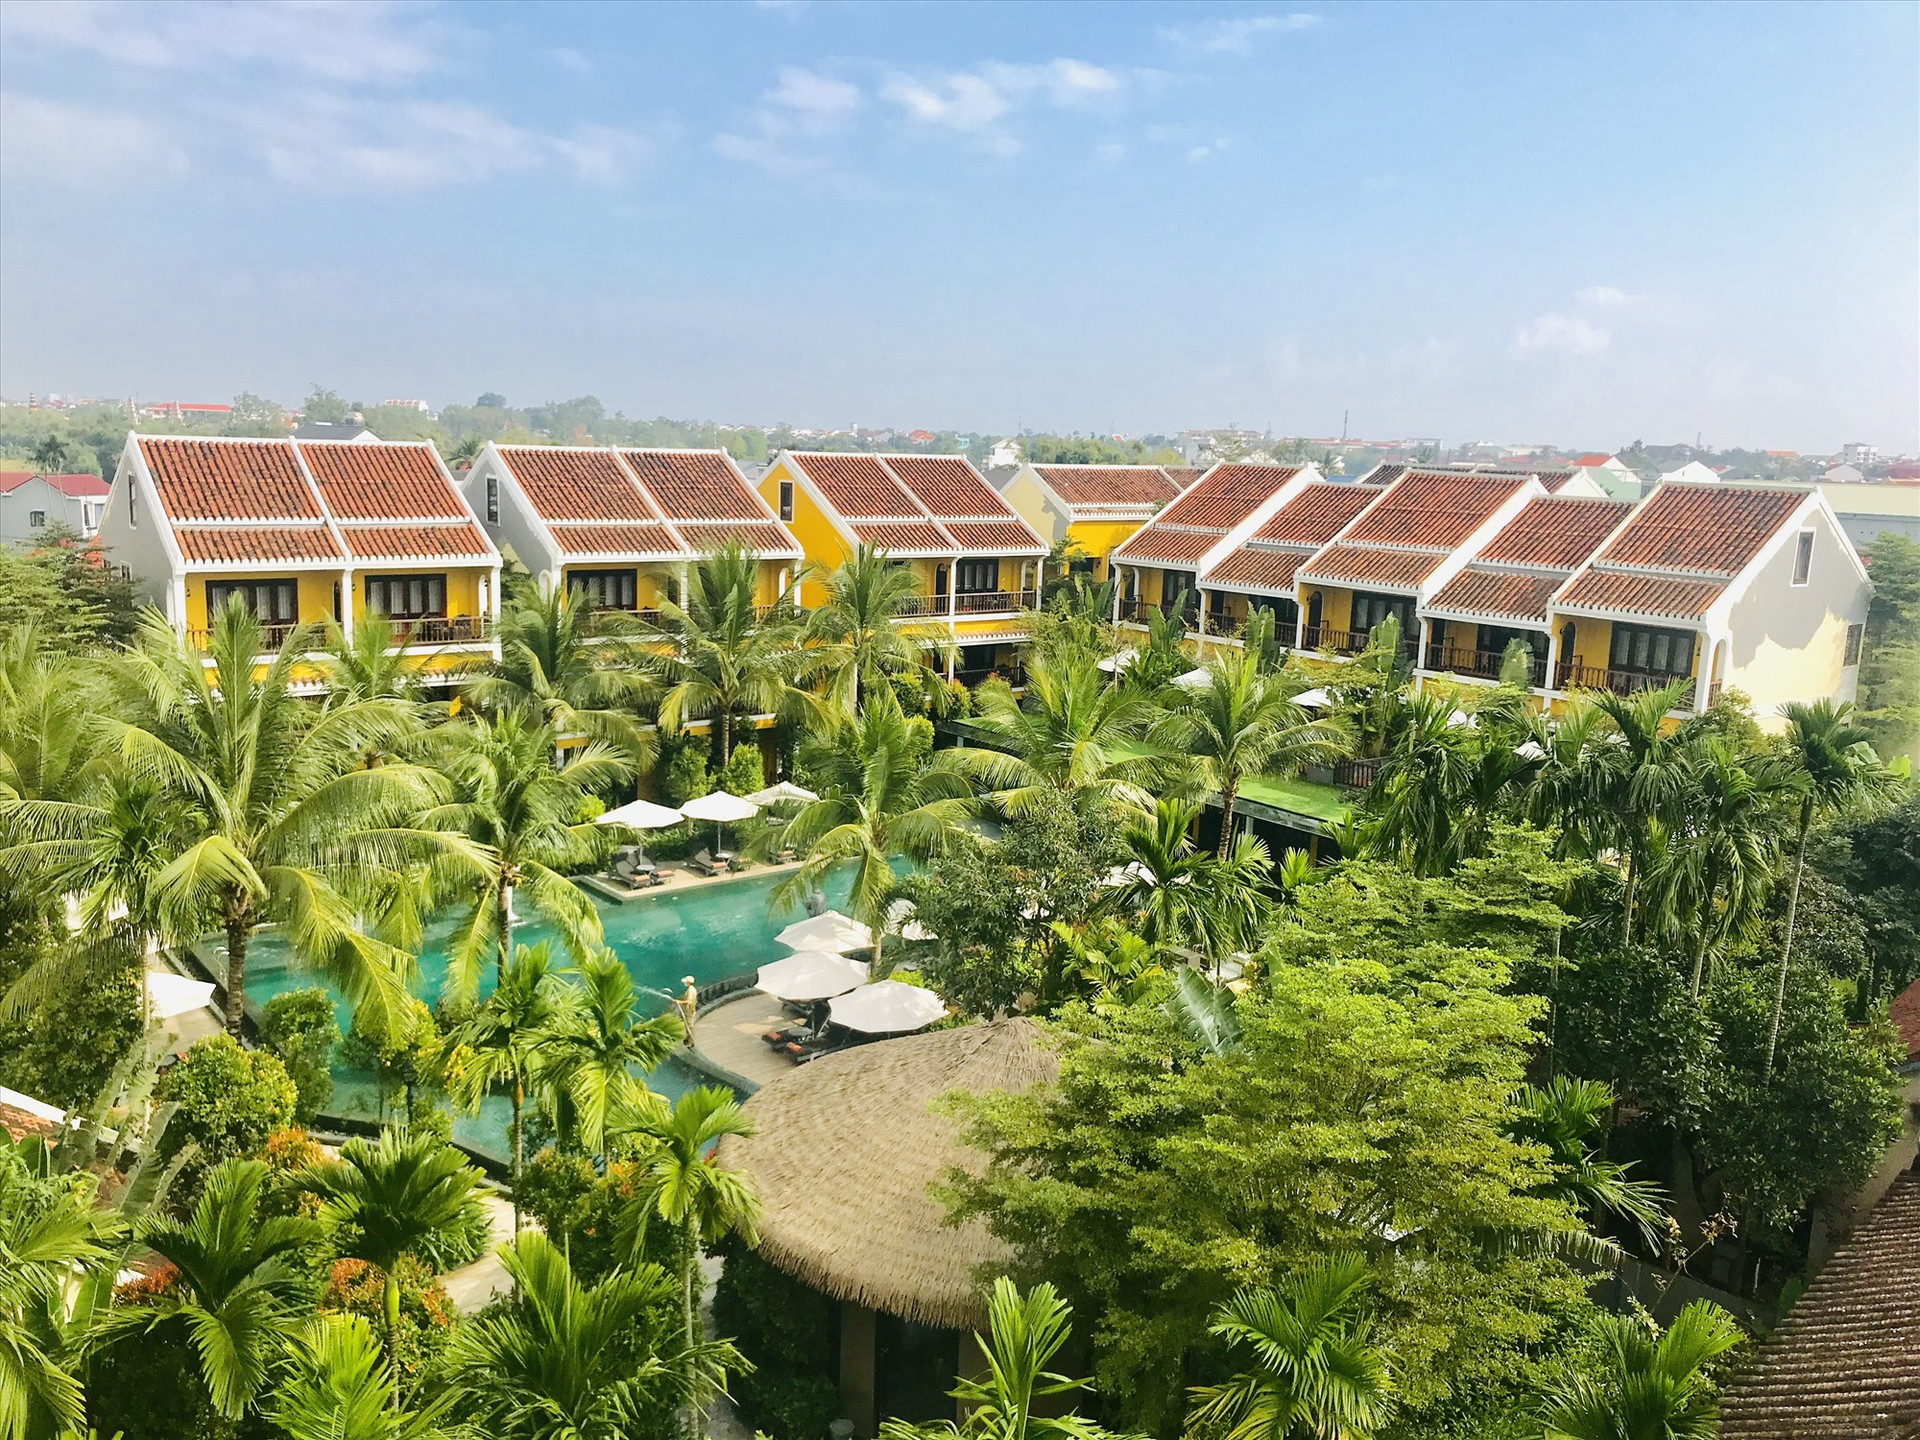 Nhiều cơ sở lưu trú ở Hội An, trong đó có La Siesta Hội An Resort & Spa đang phát triển sản phẩm theo hướng xanh, bền vững. Ảnh: Q.T